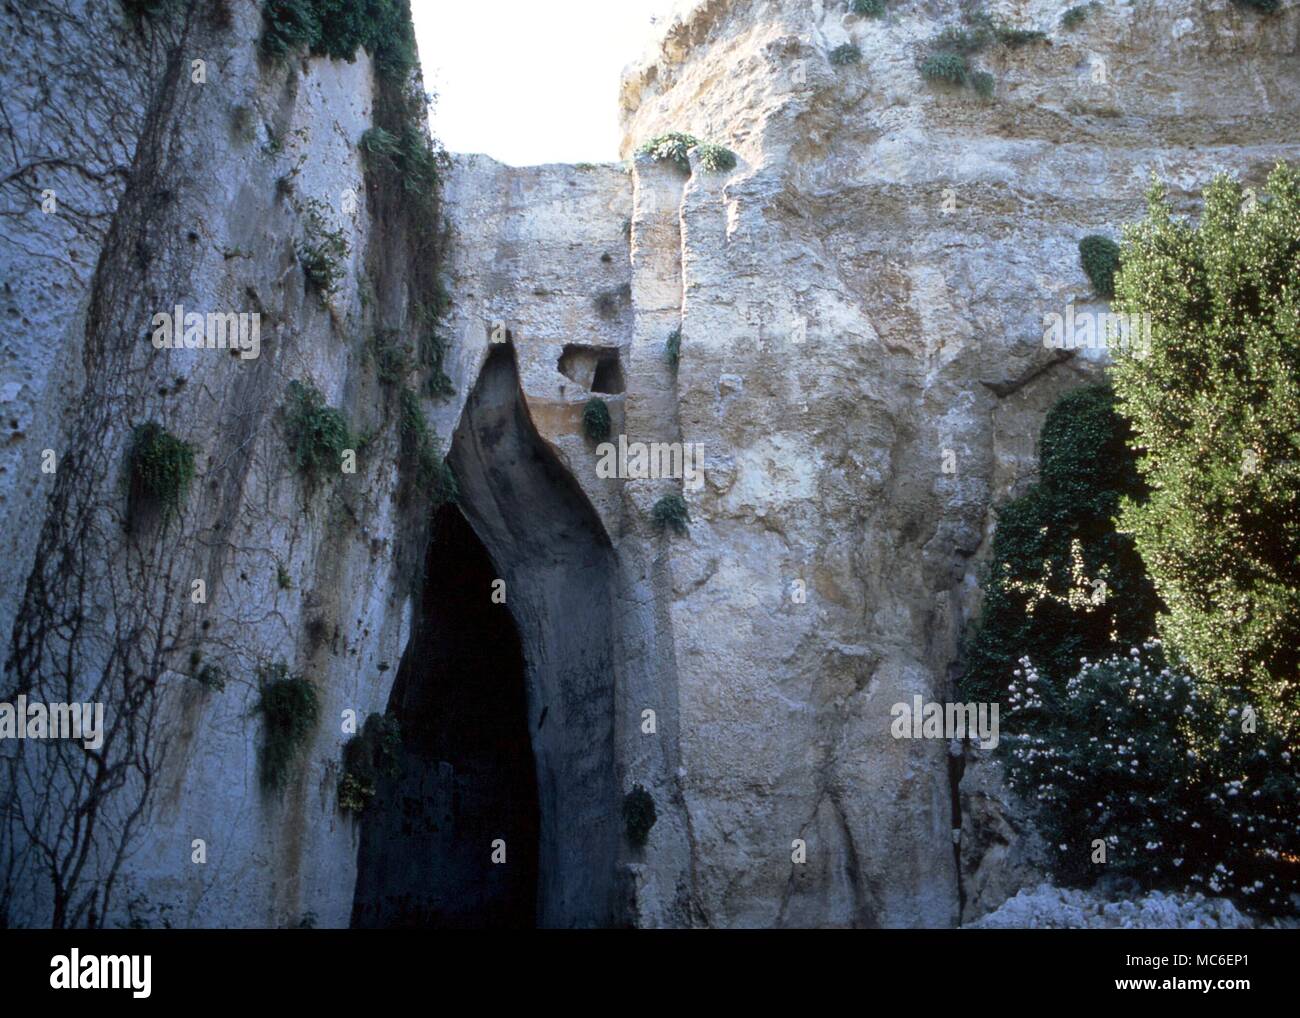 La mythologie grecque La grotte naturelle (en partie travaillé par la main de l'homme) dit être la "Oreille de Denys", à Syracuse, Sicile Banque D'Images